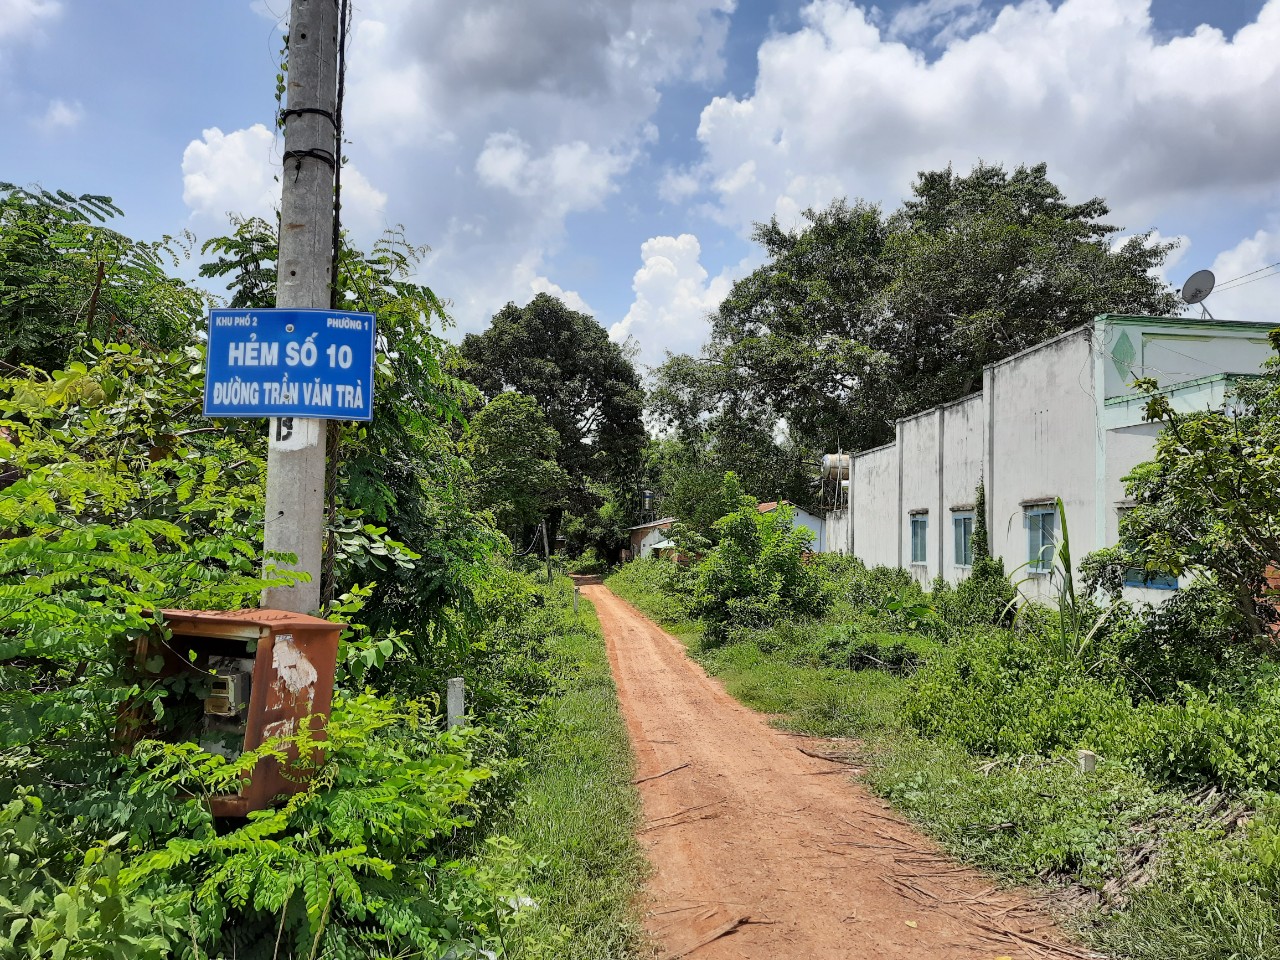 Bán nhà phường 1 thành phố Tây Ninh – gần trường tiểu học Nguyễn Thái Bình